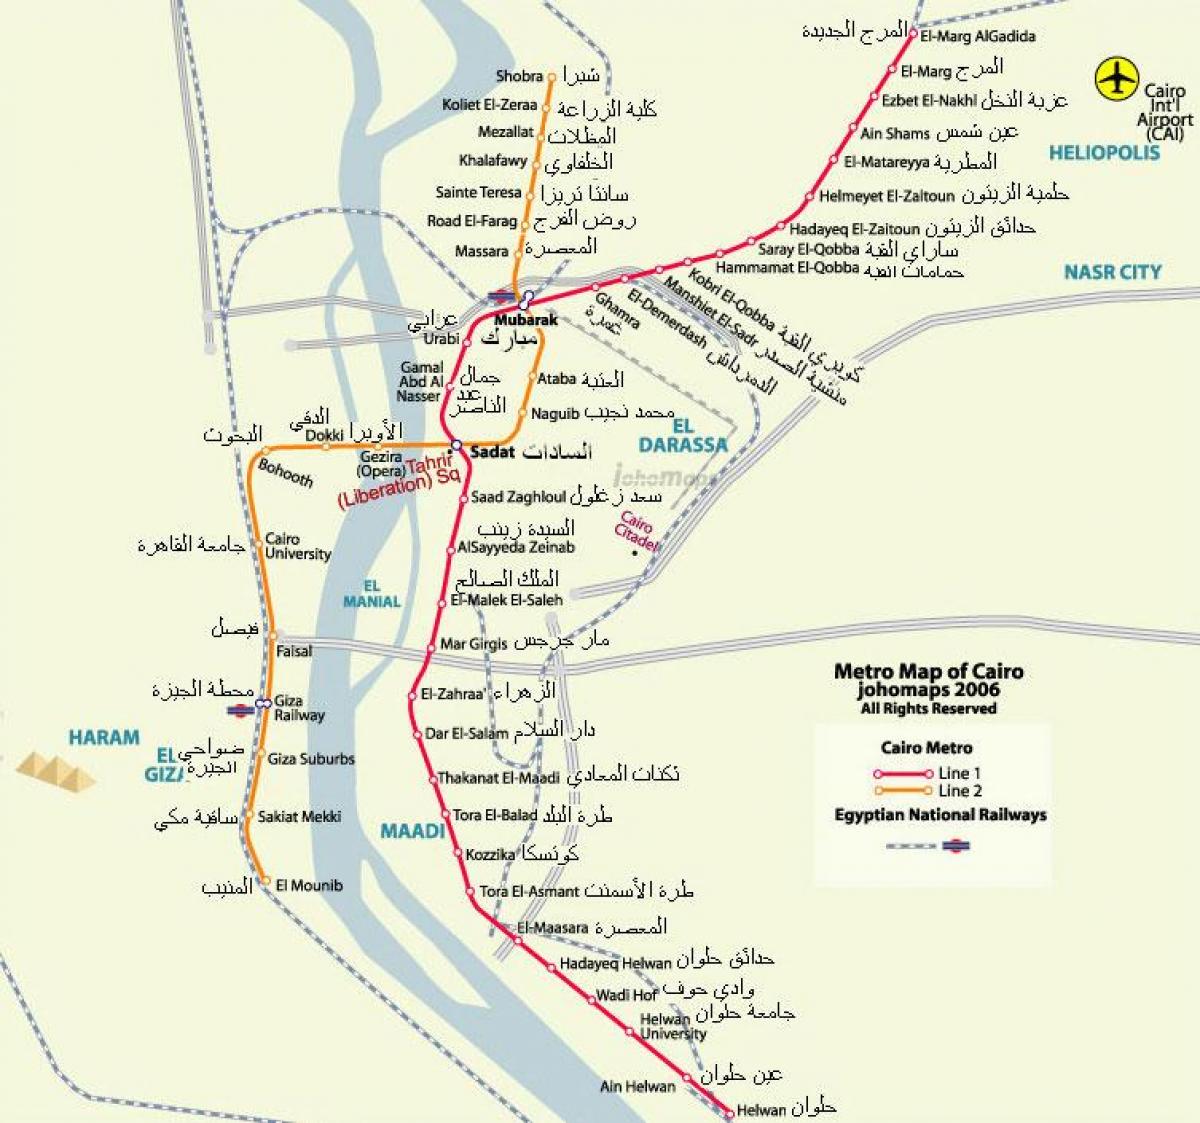 каиро метро мапата 2016 година